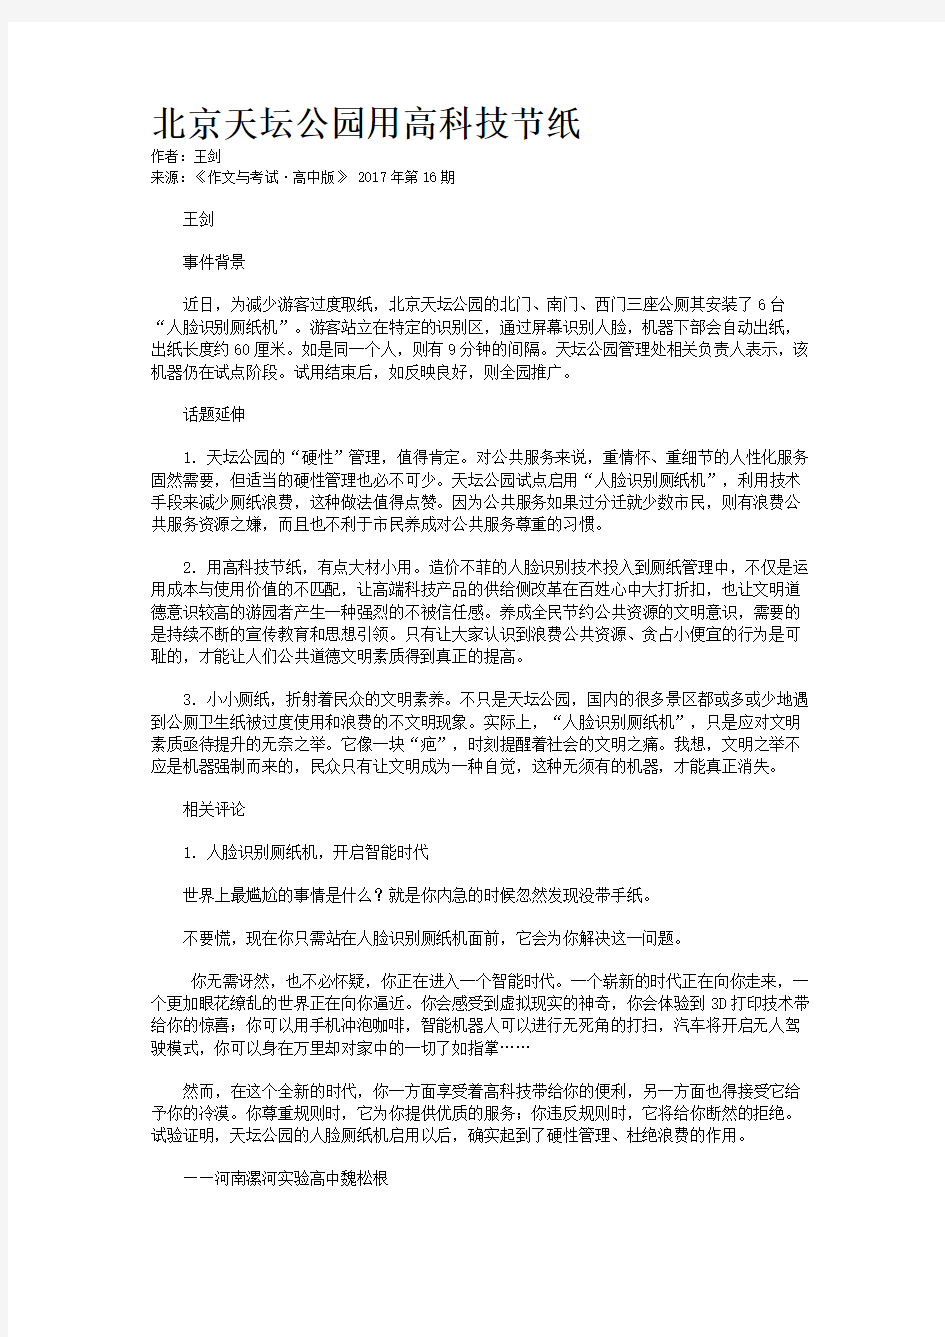 北京天坛公园用高科技节纸